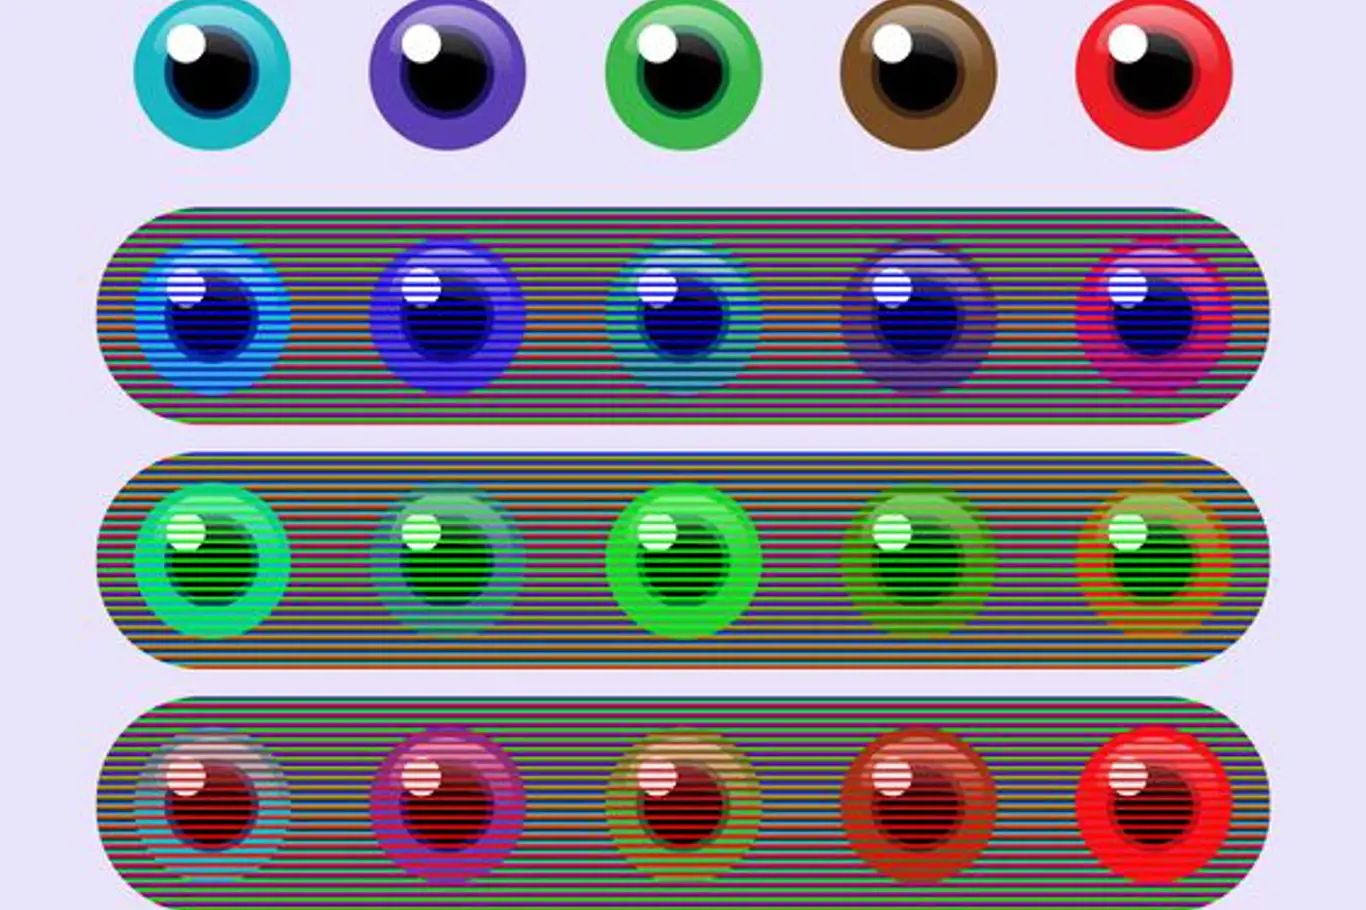 Kolik barev vidíte? Optická iluze vás dokonale zmate!